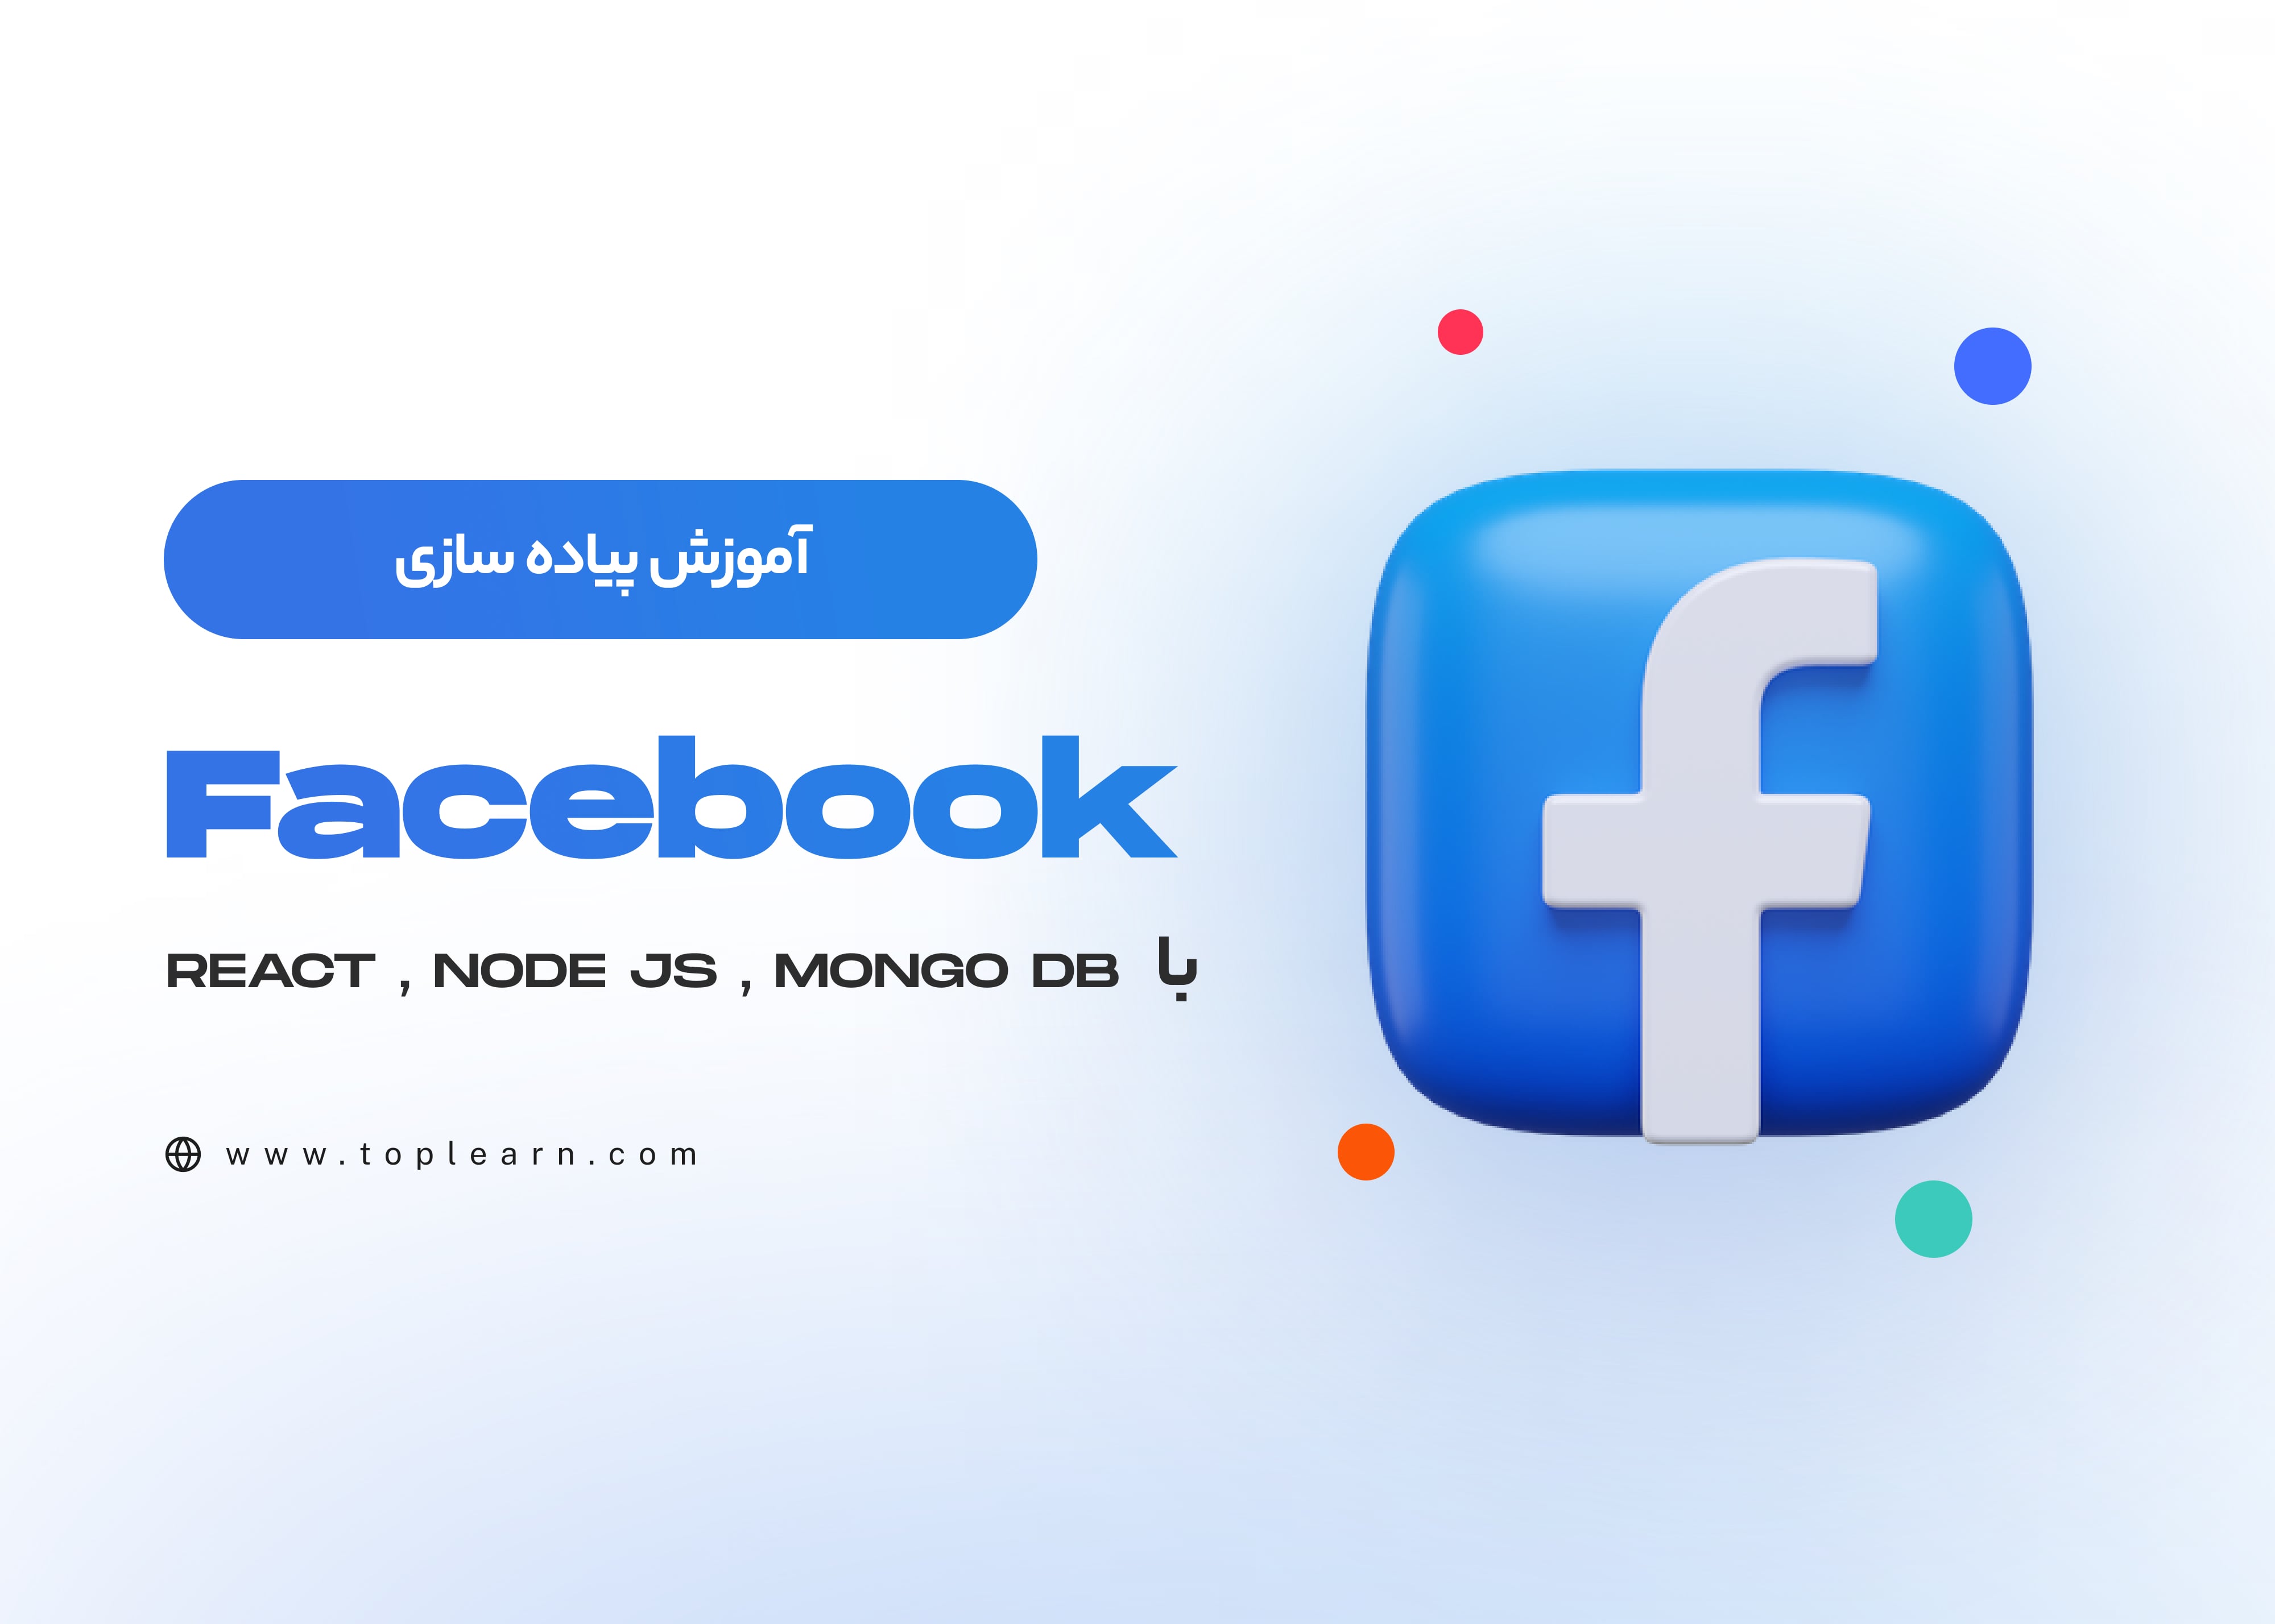 آموزش پیاده سازی Facebook با Node Js , React , Mongo DB